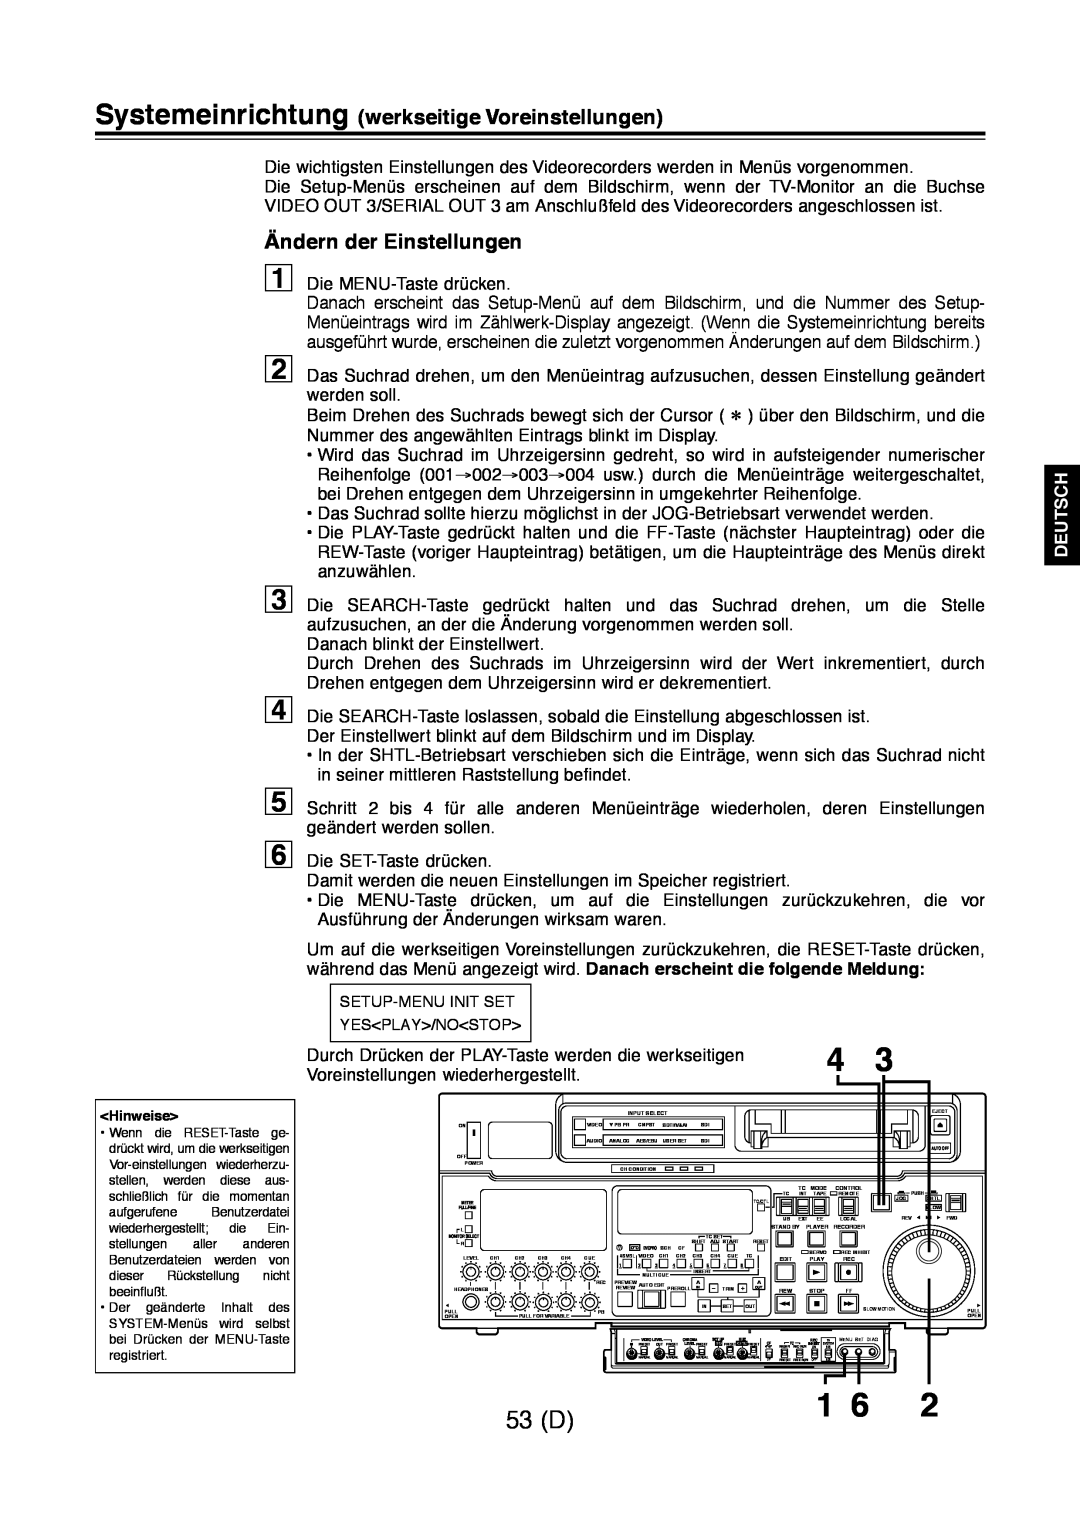 Panasonic AJ-D960 53 D, Systemeinrichtung werkseitige Voreinstellungen, Ändern der Einstellungen, Deutsch 